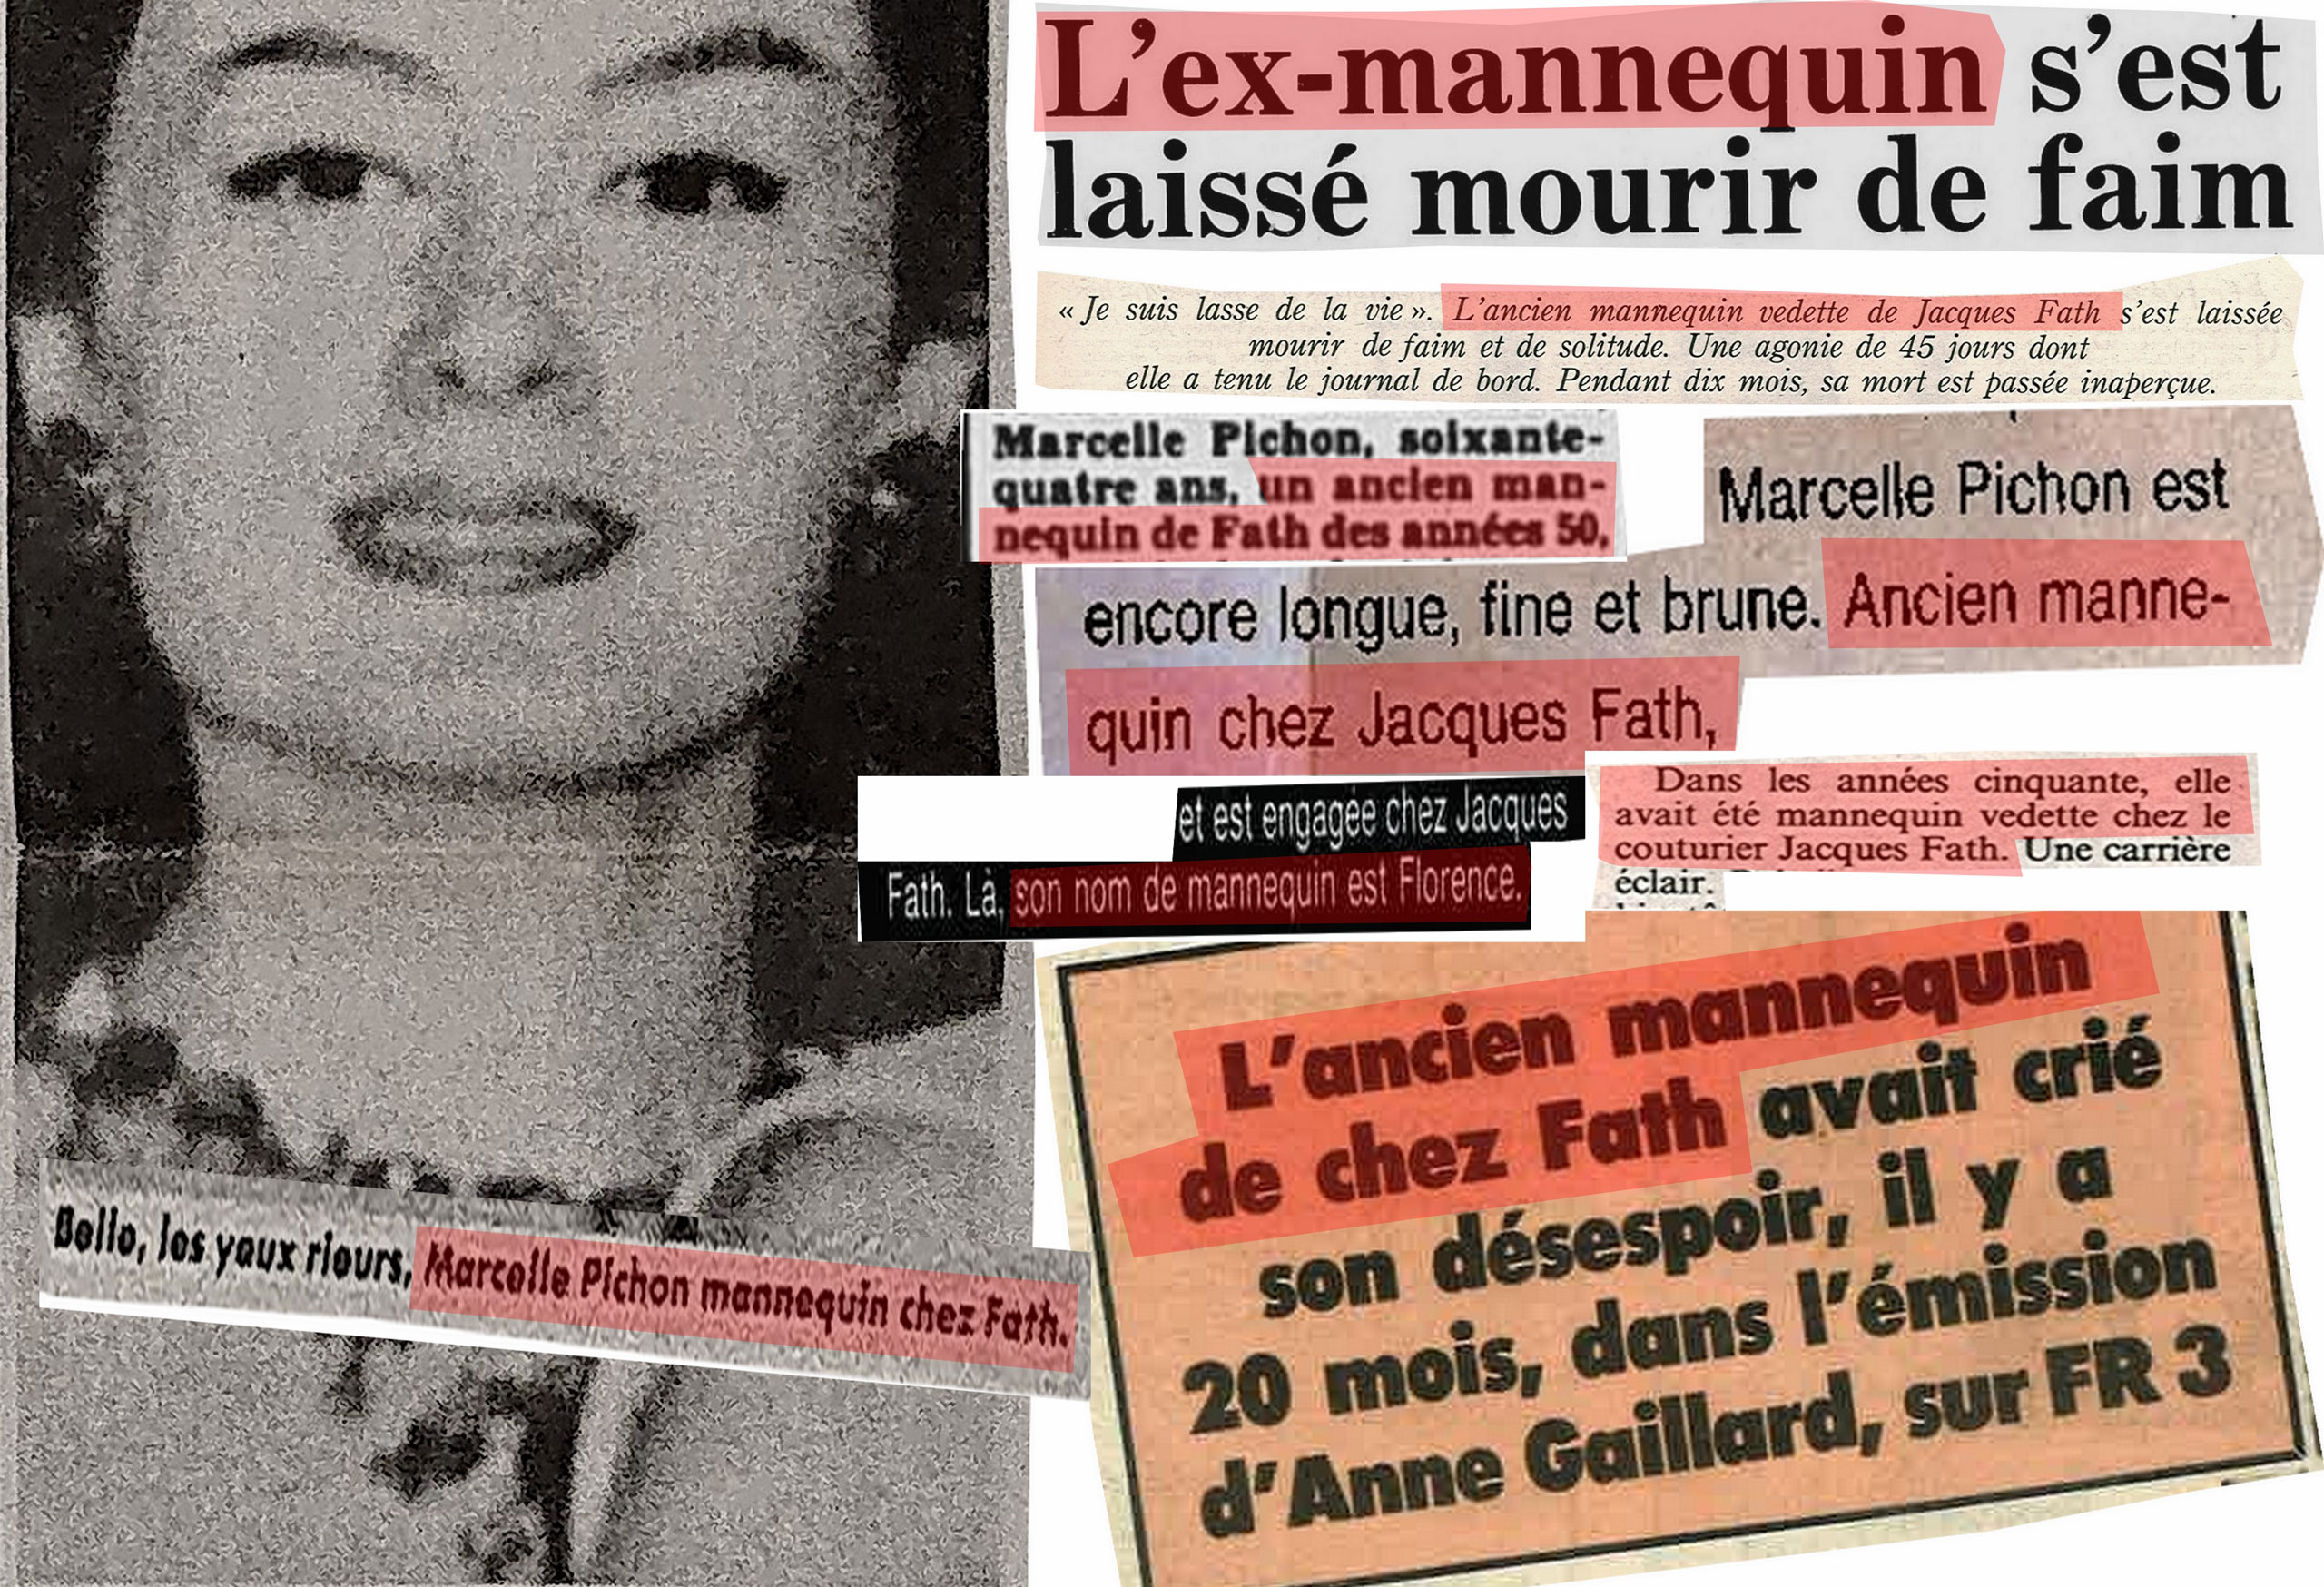 De France Soir à Libération et du JDD à Paris-Match, toute la presse l’affirme : Marcelle Pichon fut mannequin vedette chez le couturier Jacques Fath dans les années 50, où son « nom d’artiste » était Florence.<br><br>